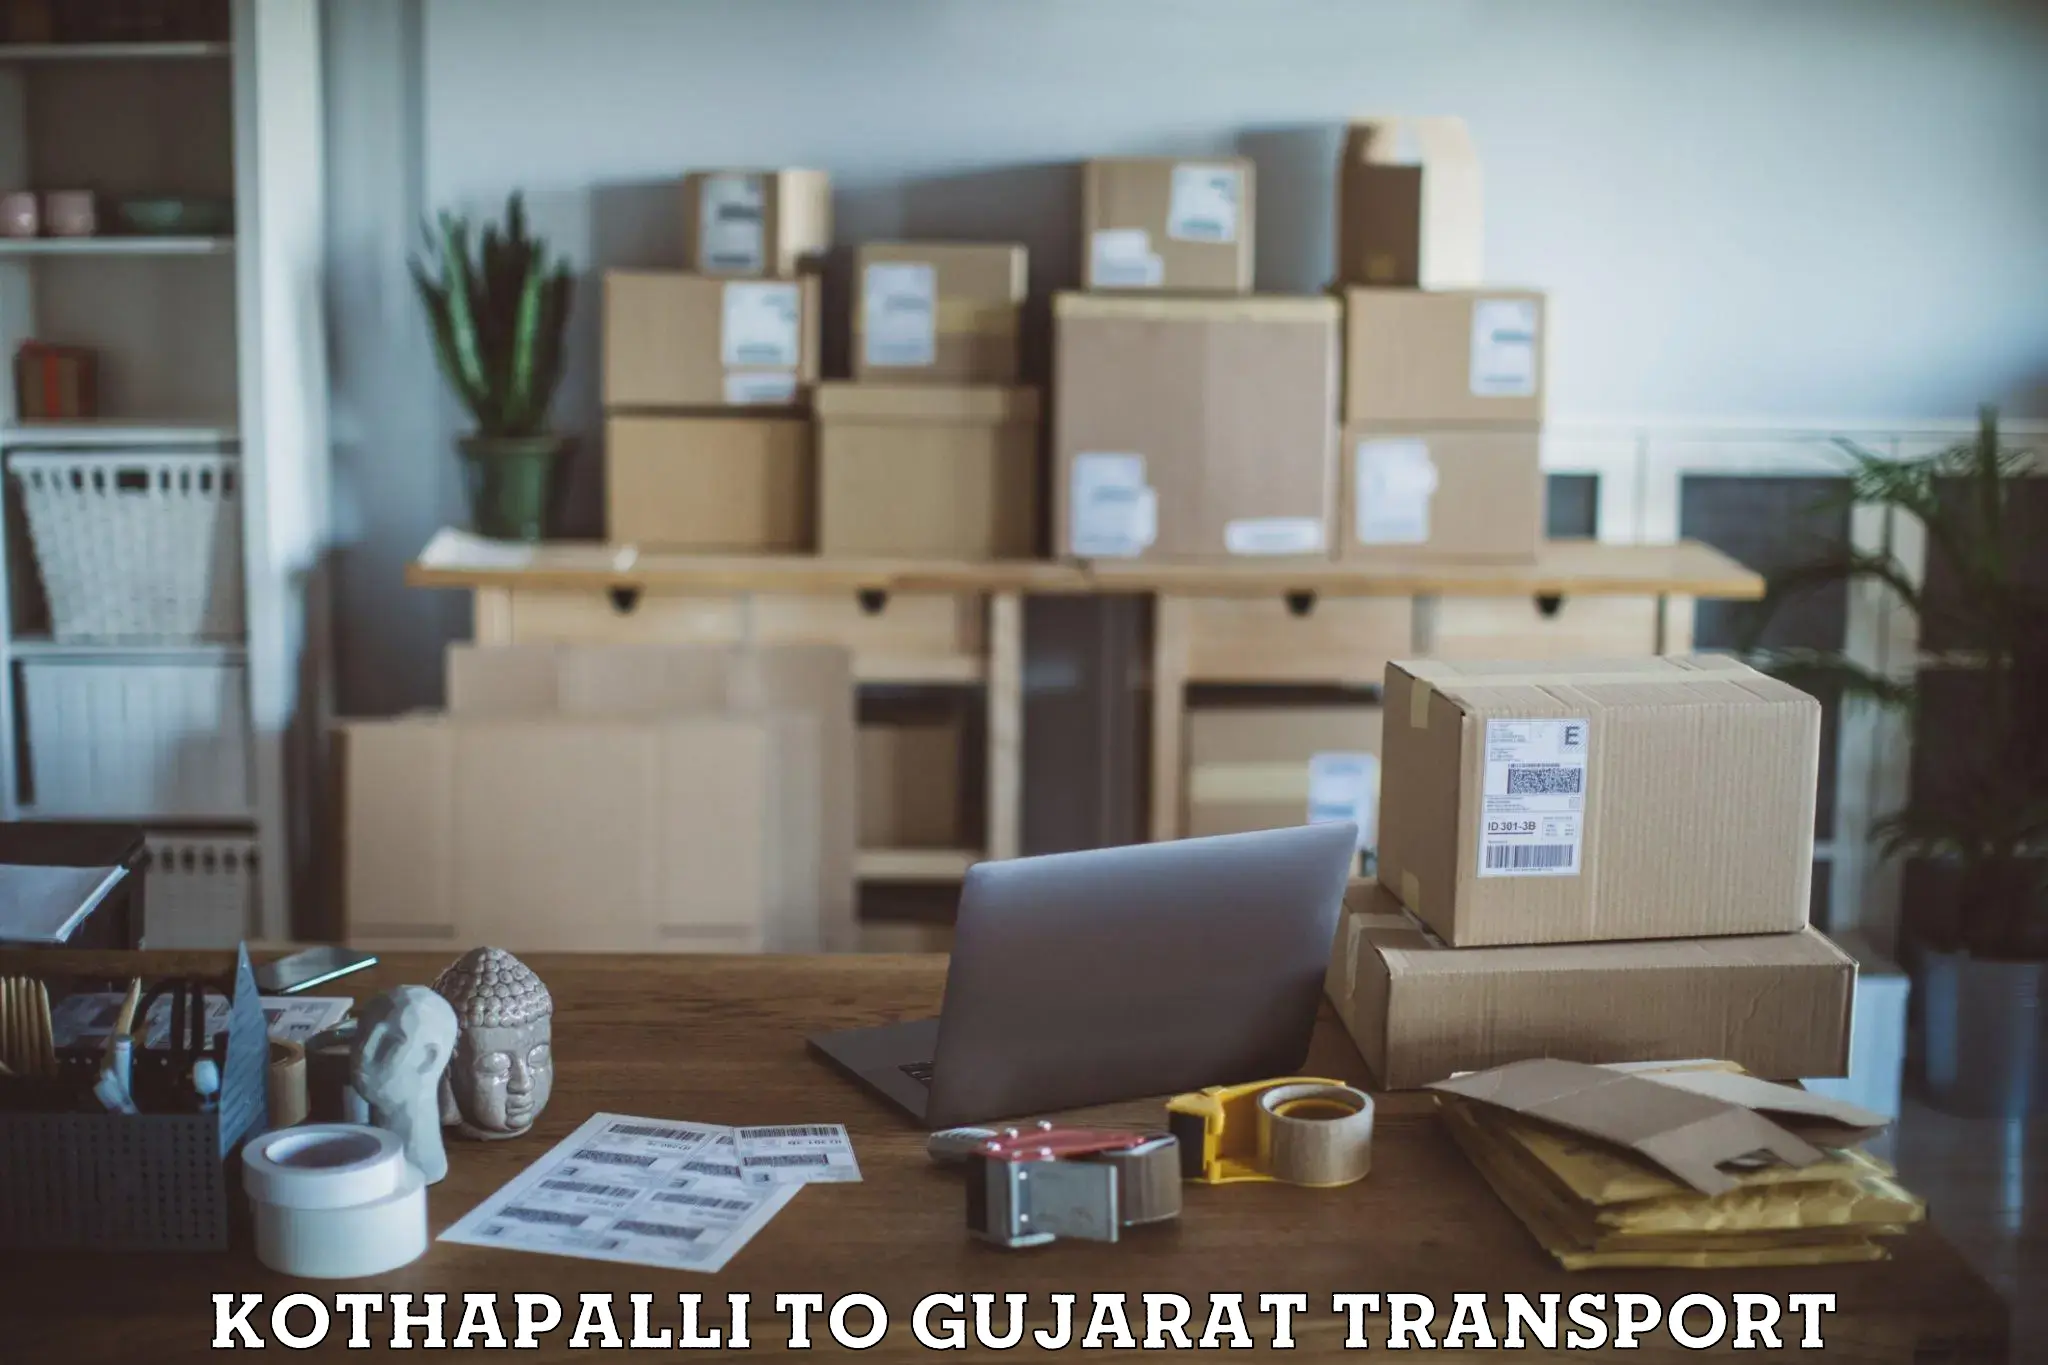 Land transport services Kothapalli to Patan Gujarat